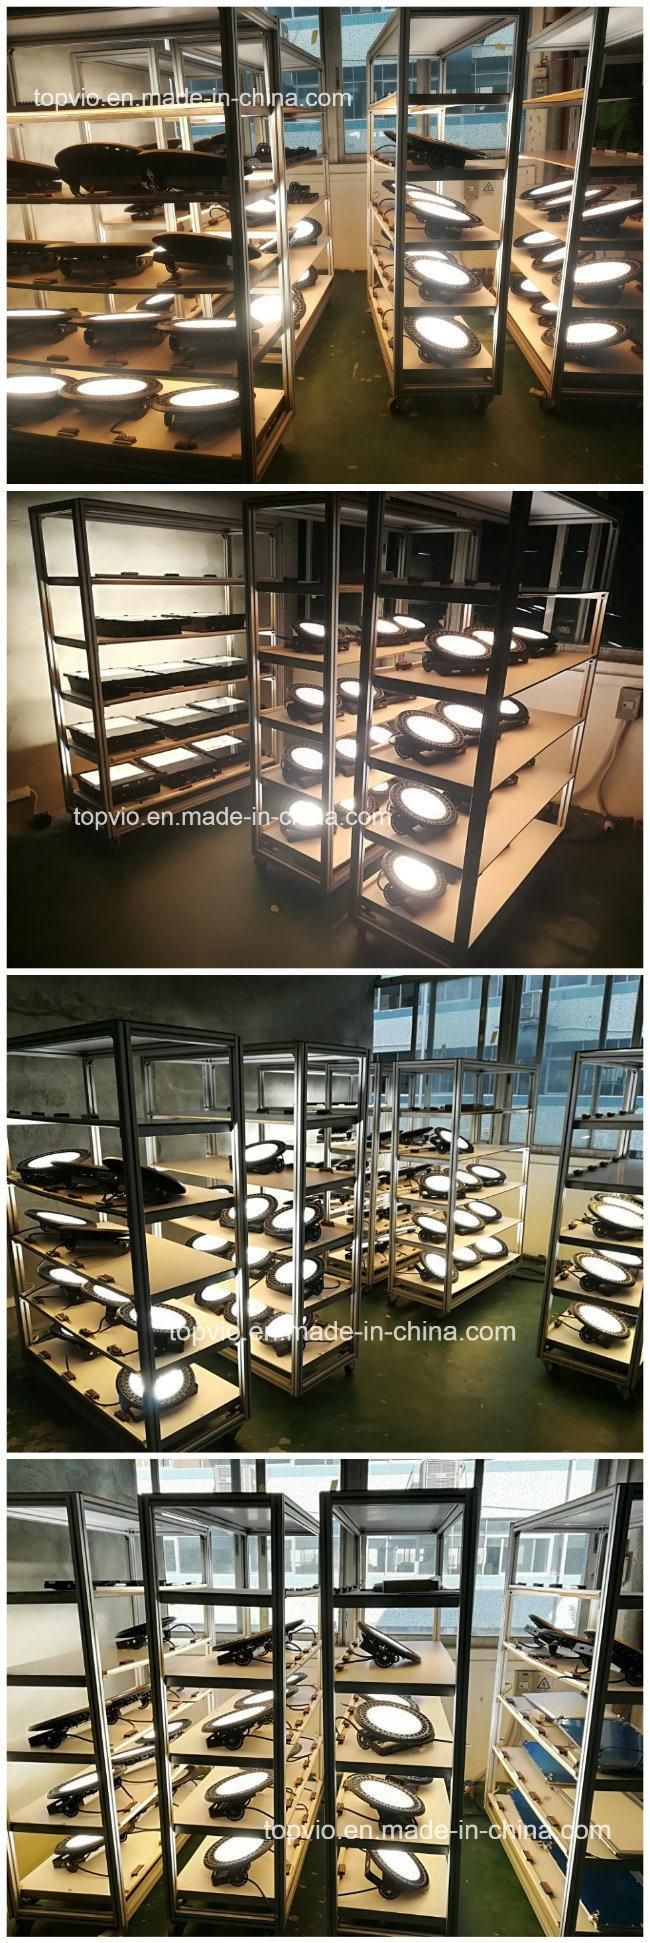 Hot Sale LED High Bay Light for Warehouse/Workshop/Studio